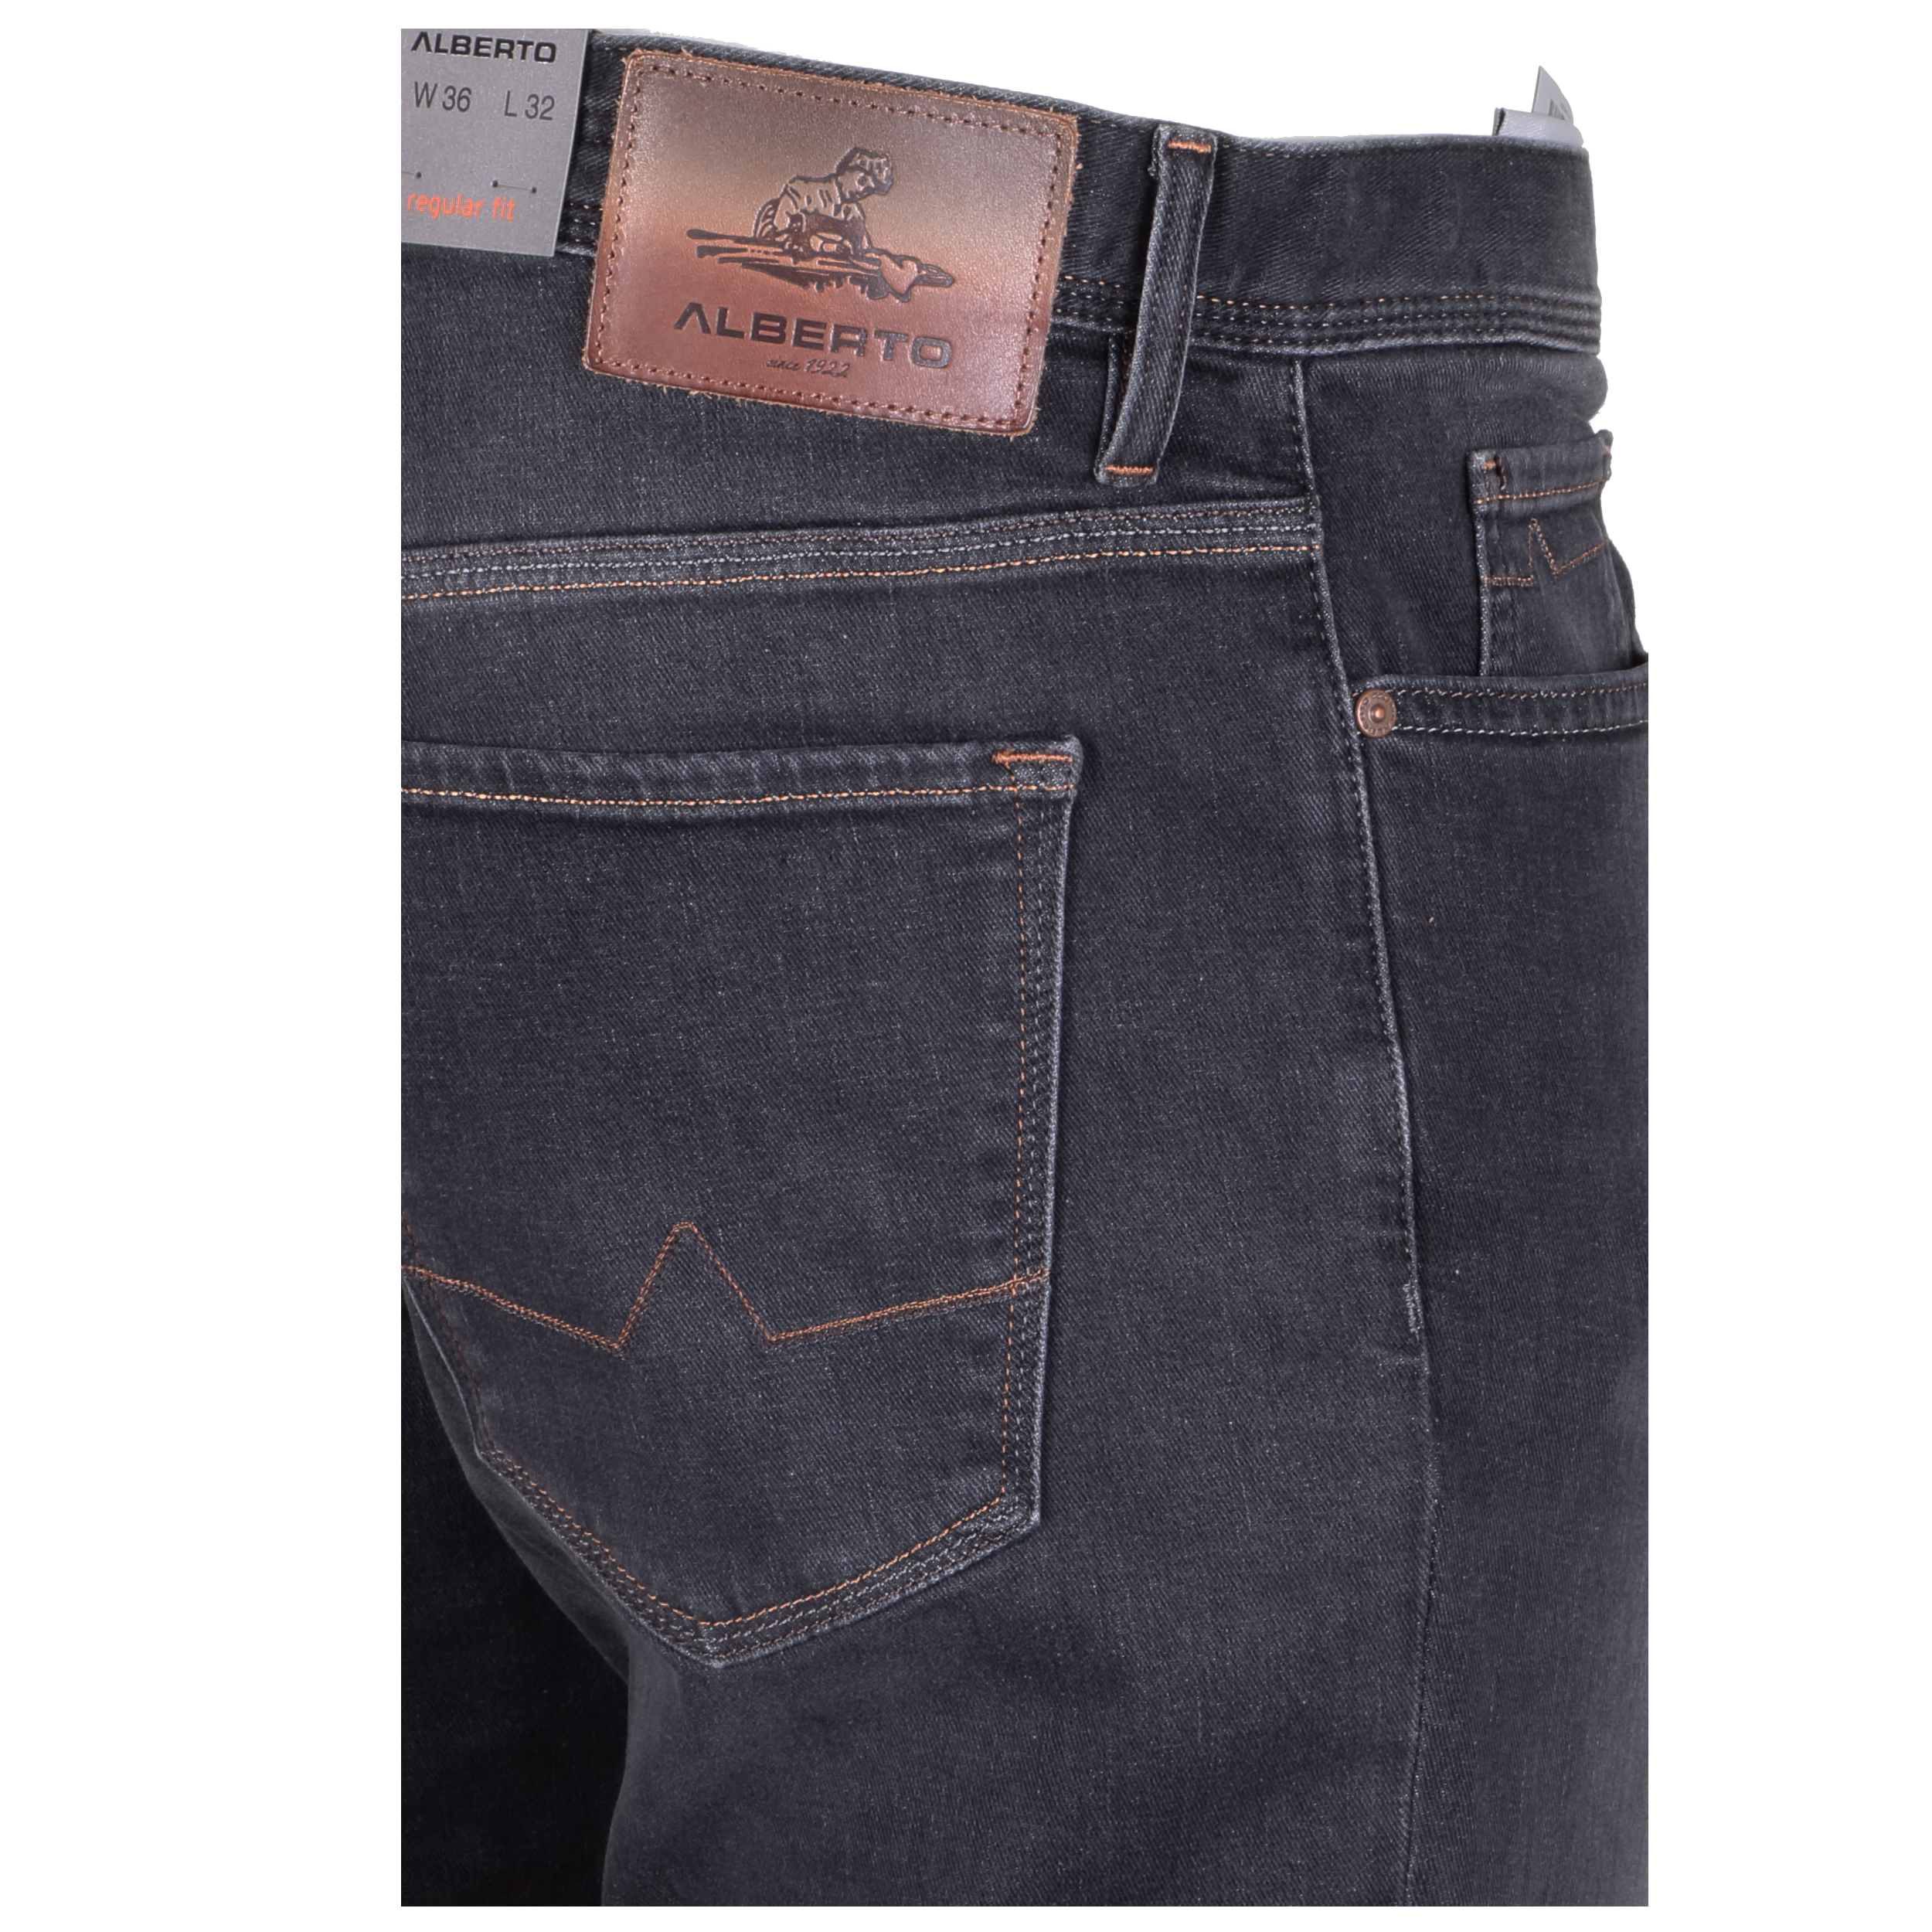 Alberto Herren Jeans Pipe regular fit - grey 35/32